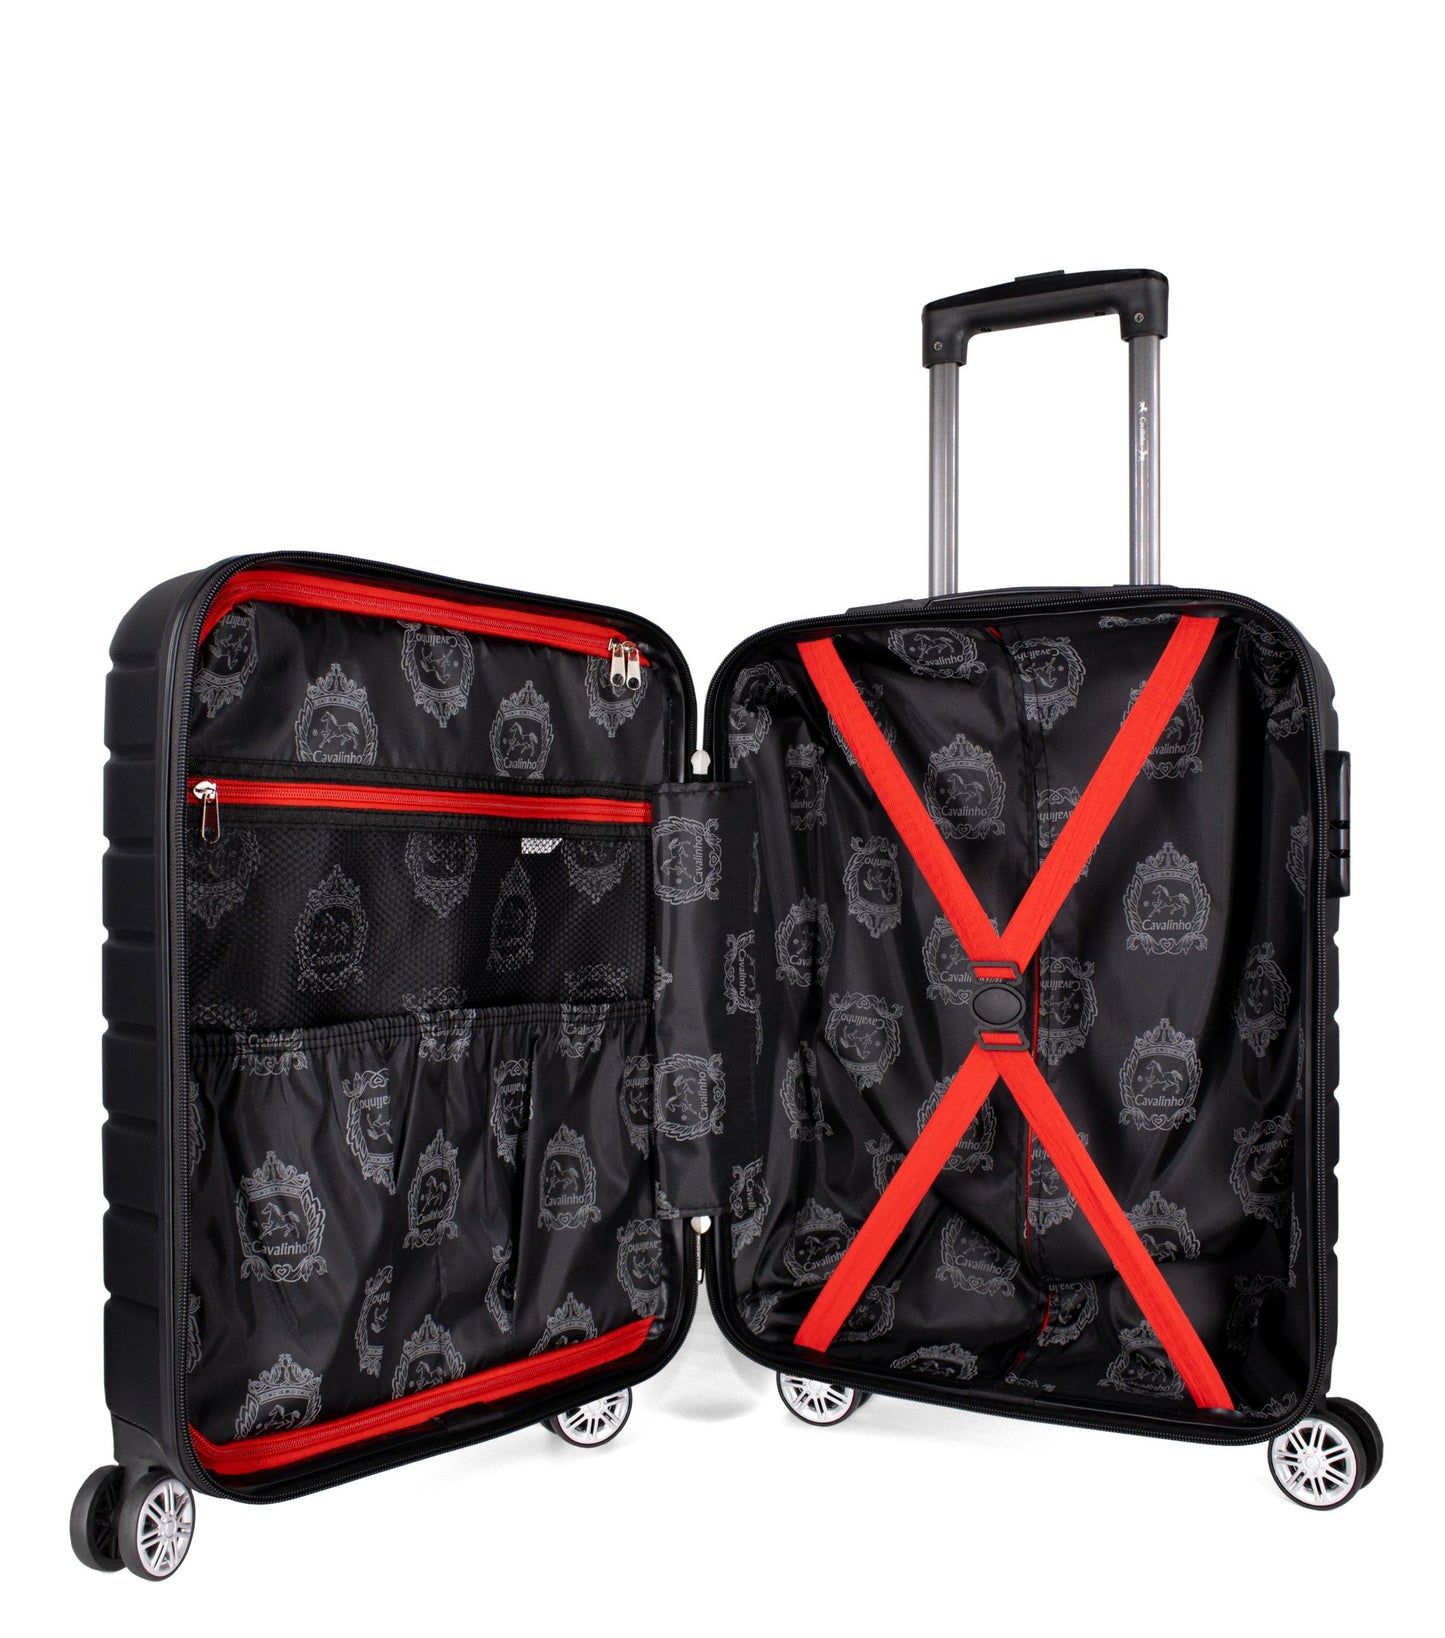 Cavalinho Bon Voyage Carry-on Hardside Luggage (19") - 19 inch Black - 68020005.01.19_4